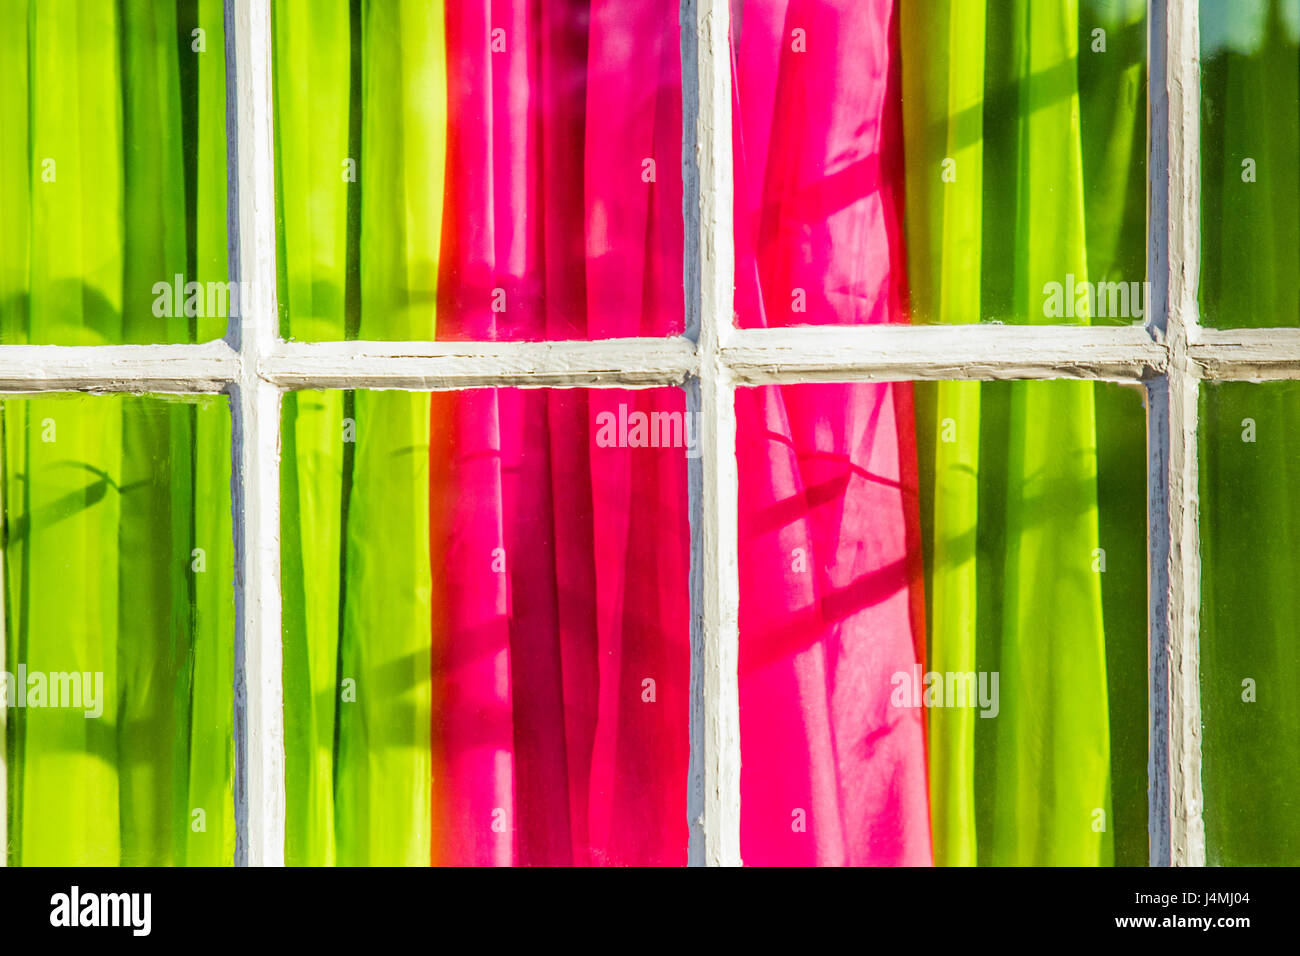 Rideaux de couleur rose et vert vu de fenêtre avec volet français Banque D'Images